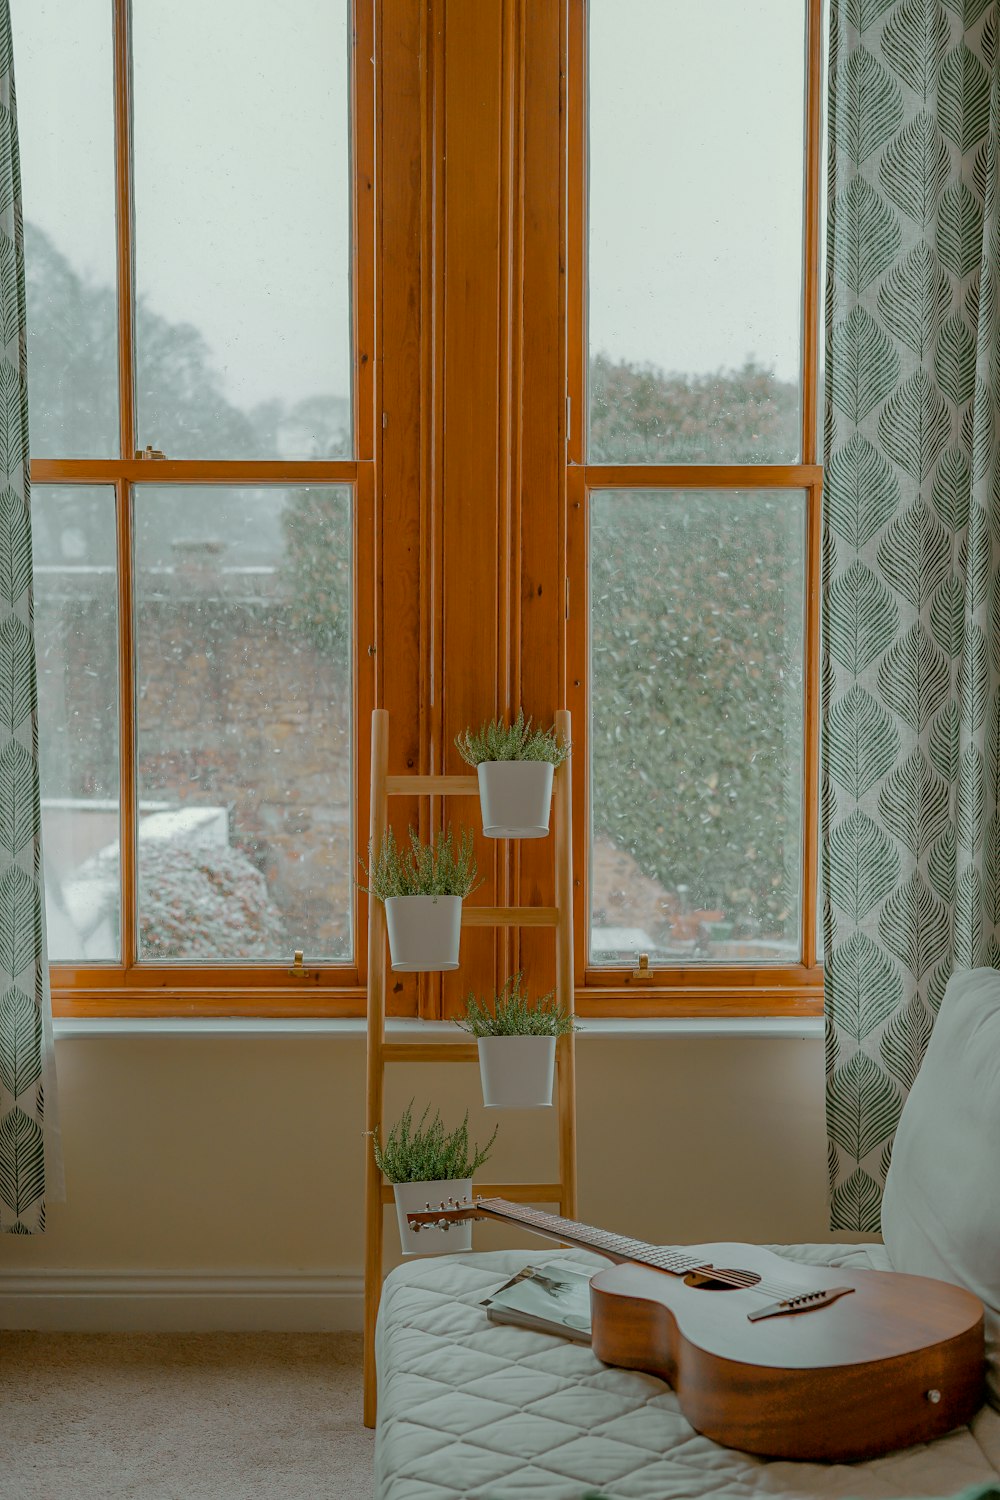 창문 근처 선반에 화분이 있는 4개의 녹색 잎 식물